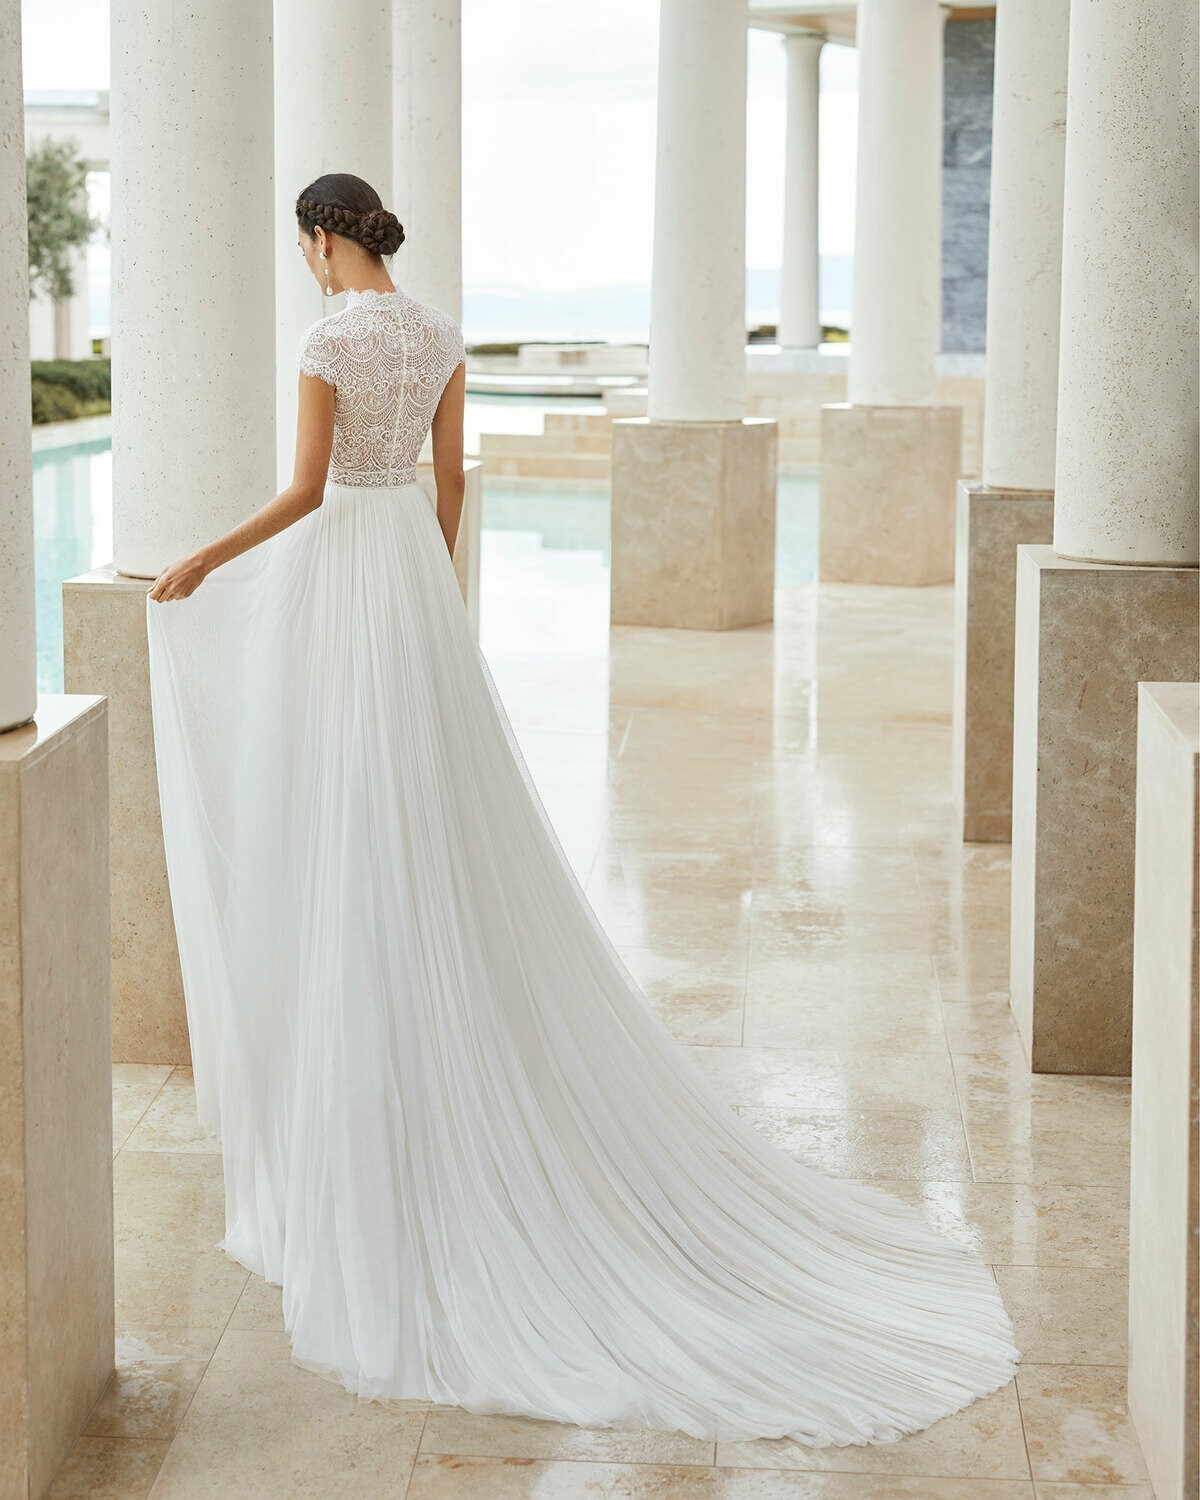 SALINA - abito da sposa collezione 2020 - Rosa Clarà Couture